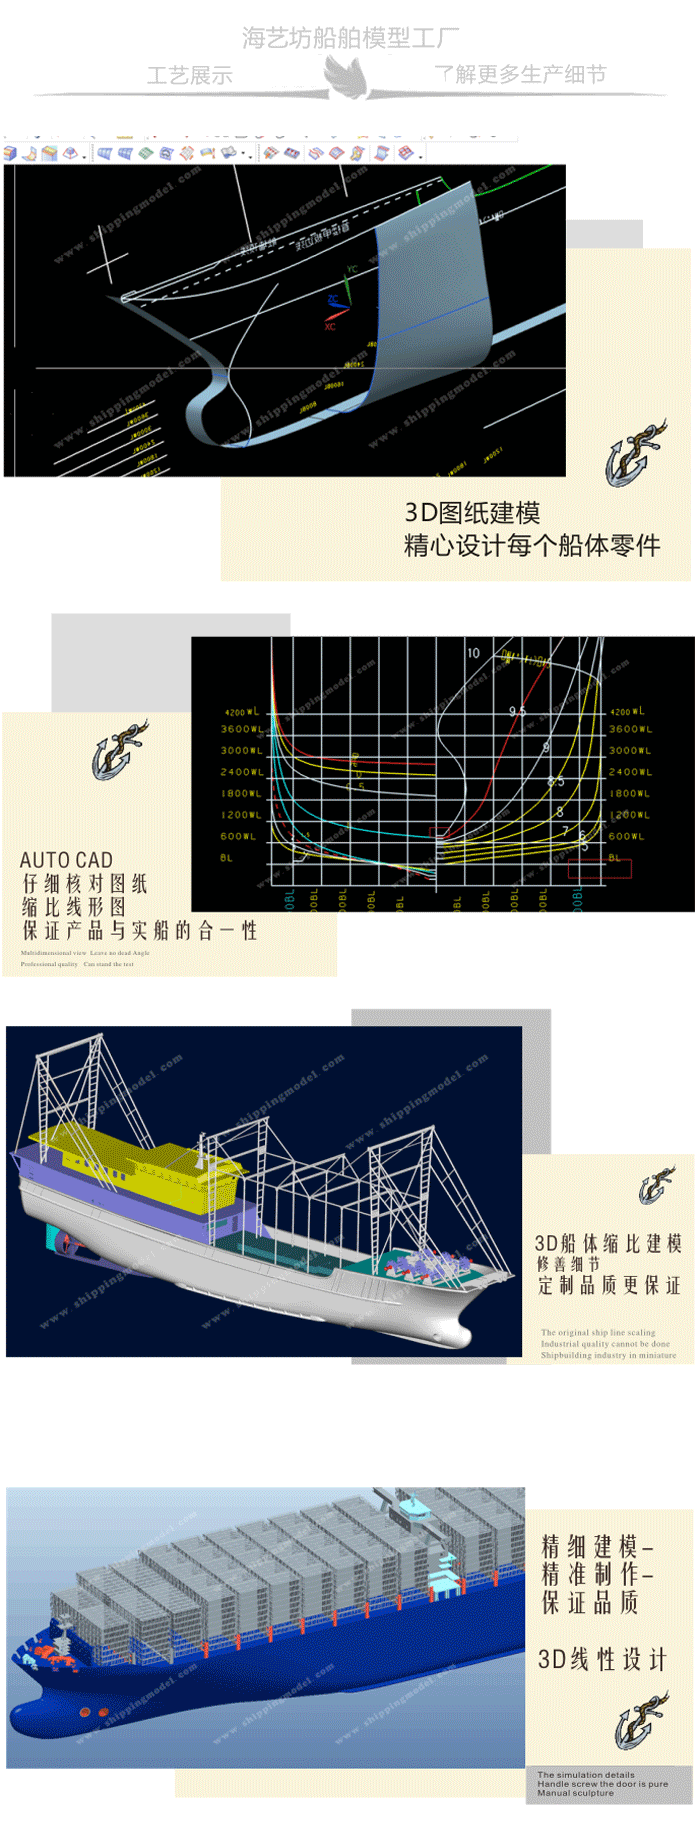 设备模型及剖析模型_40cm石油平台模型06_海艺坊模型工厂